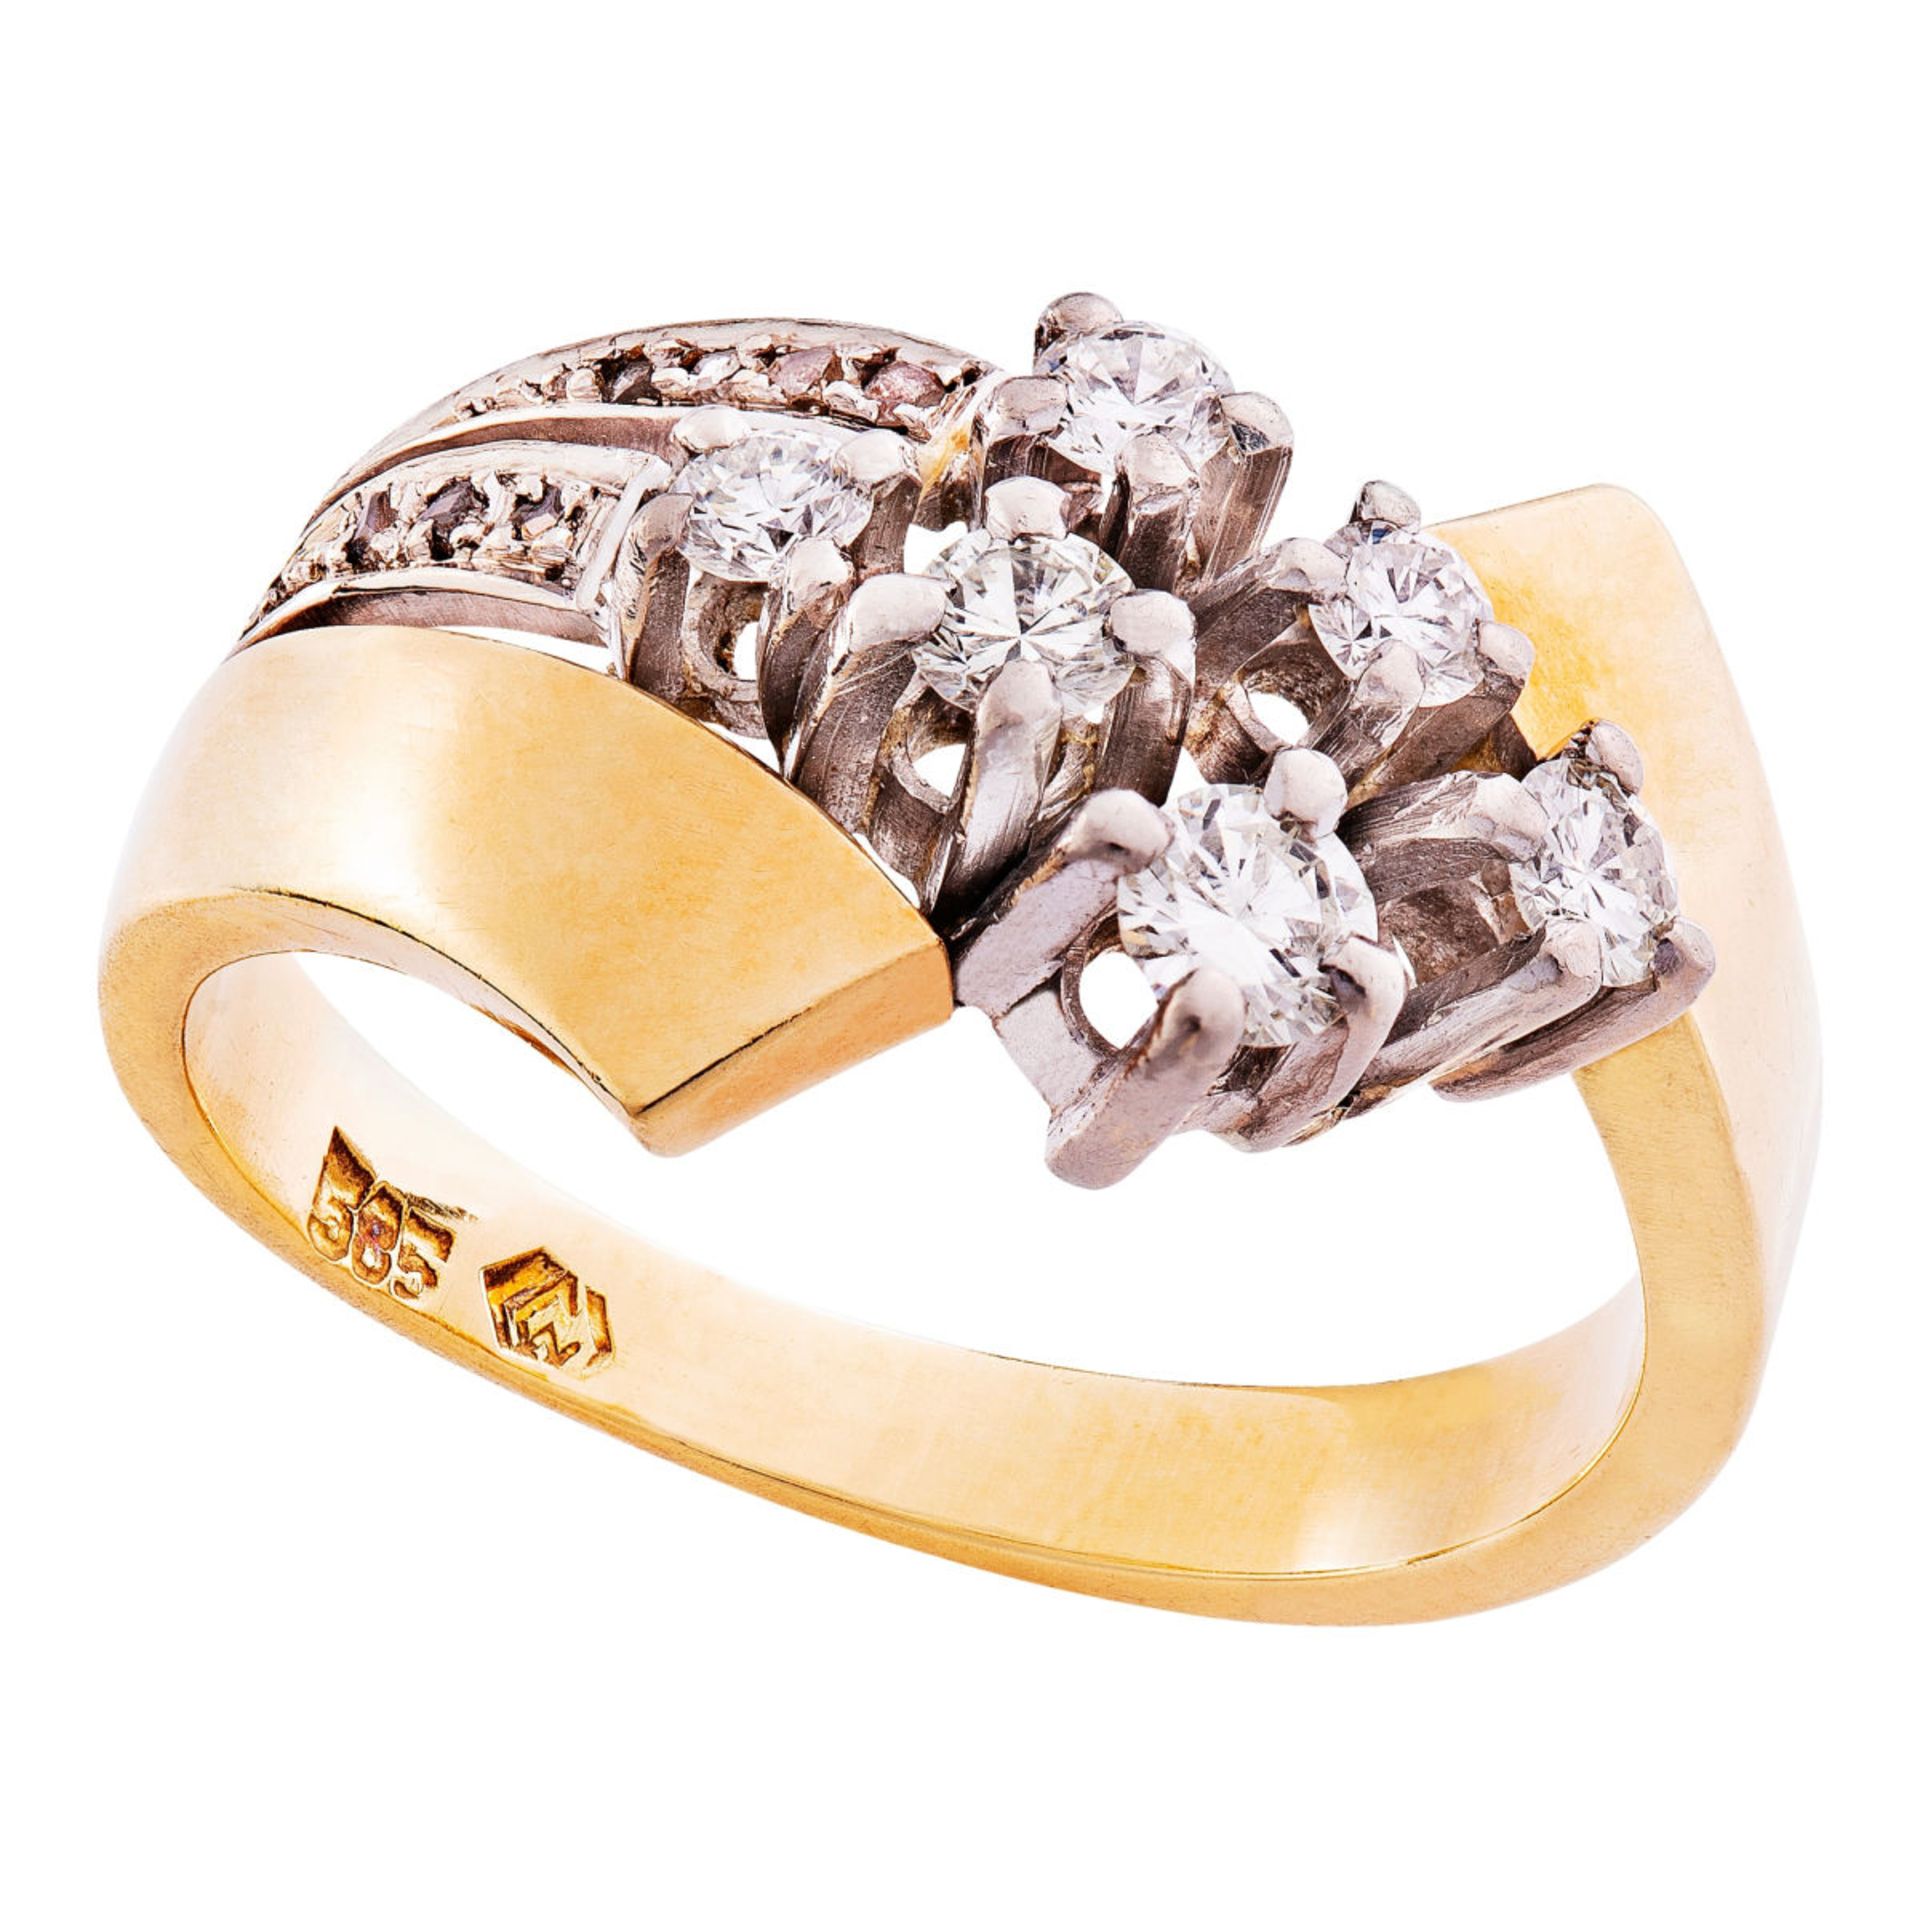 Vintage croisé ring with diamonds